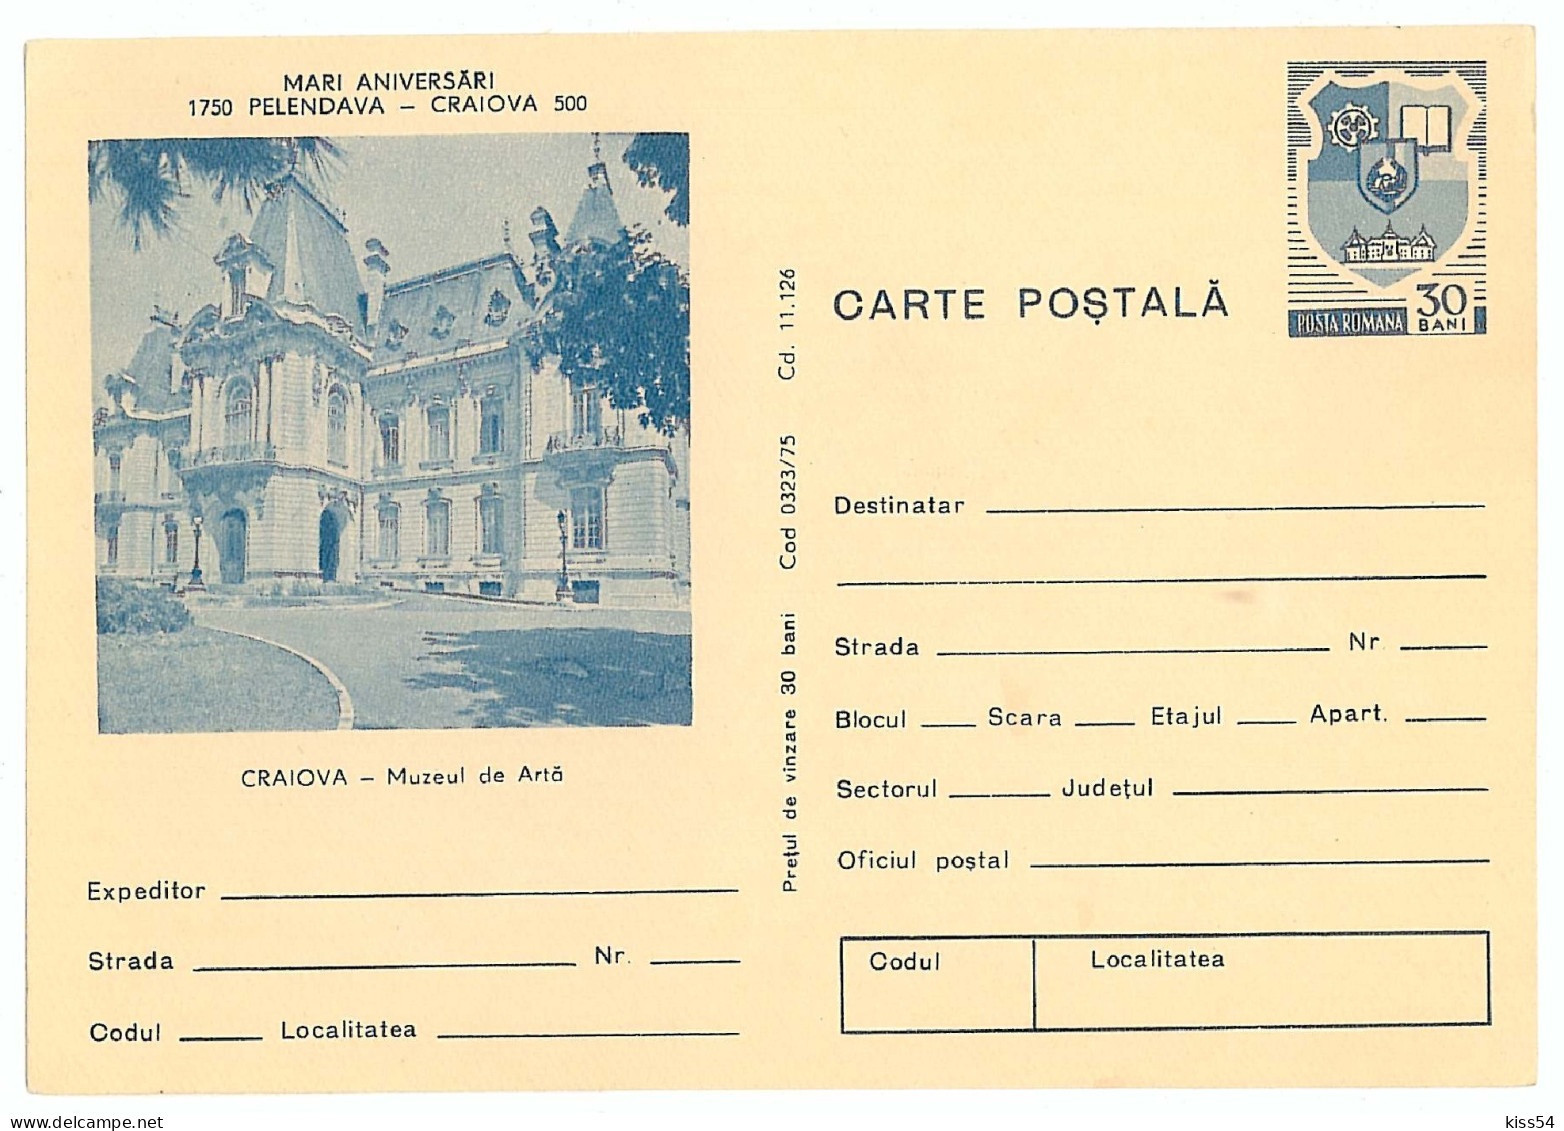 IP 75 - 323 CRAIOVA, Museum - Stationery - Unused - 1975 - Postal Stationery